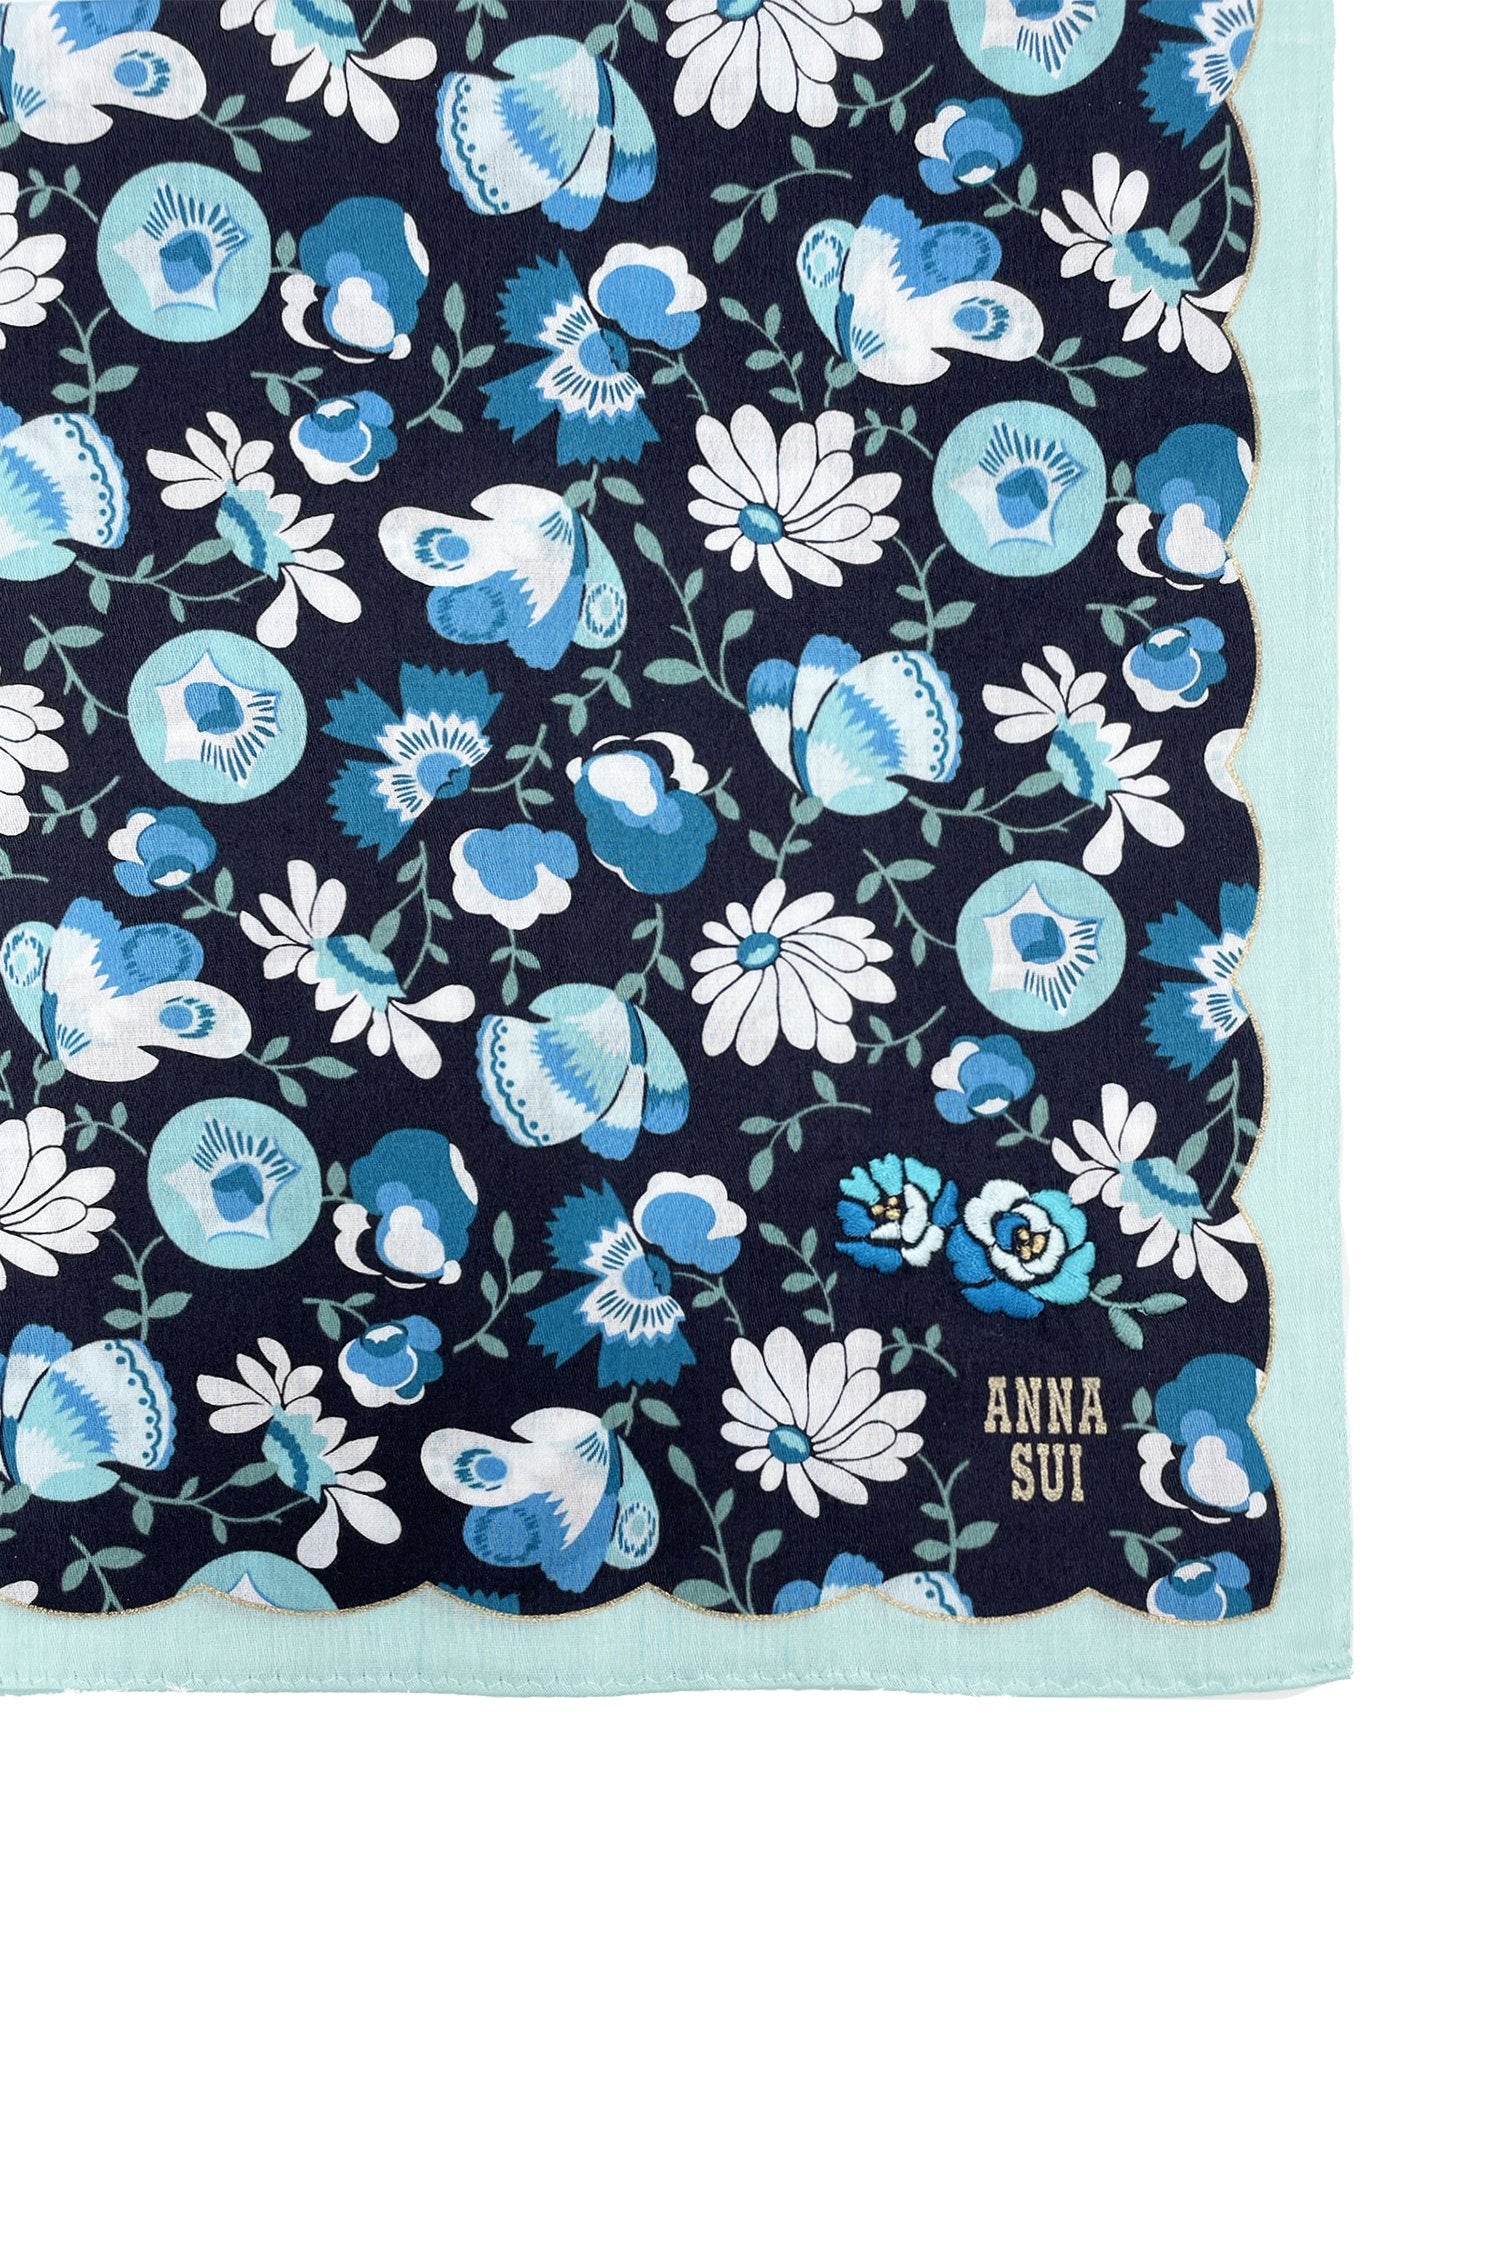 Handkerchief detail with white/ blue daisy on dark blue, baby blue hems, golden Anna’s label in corner